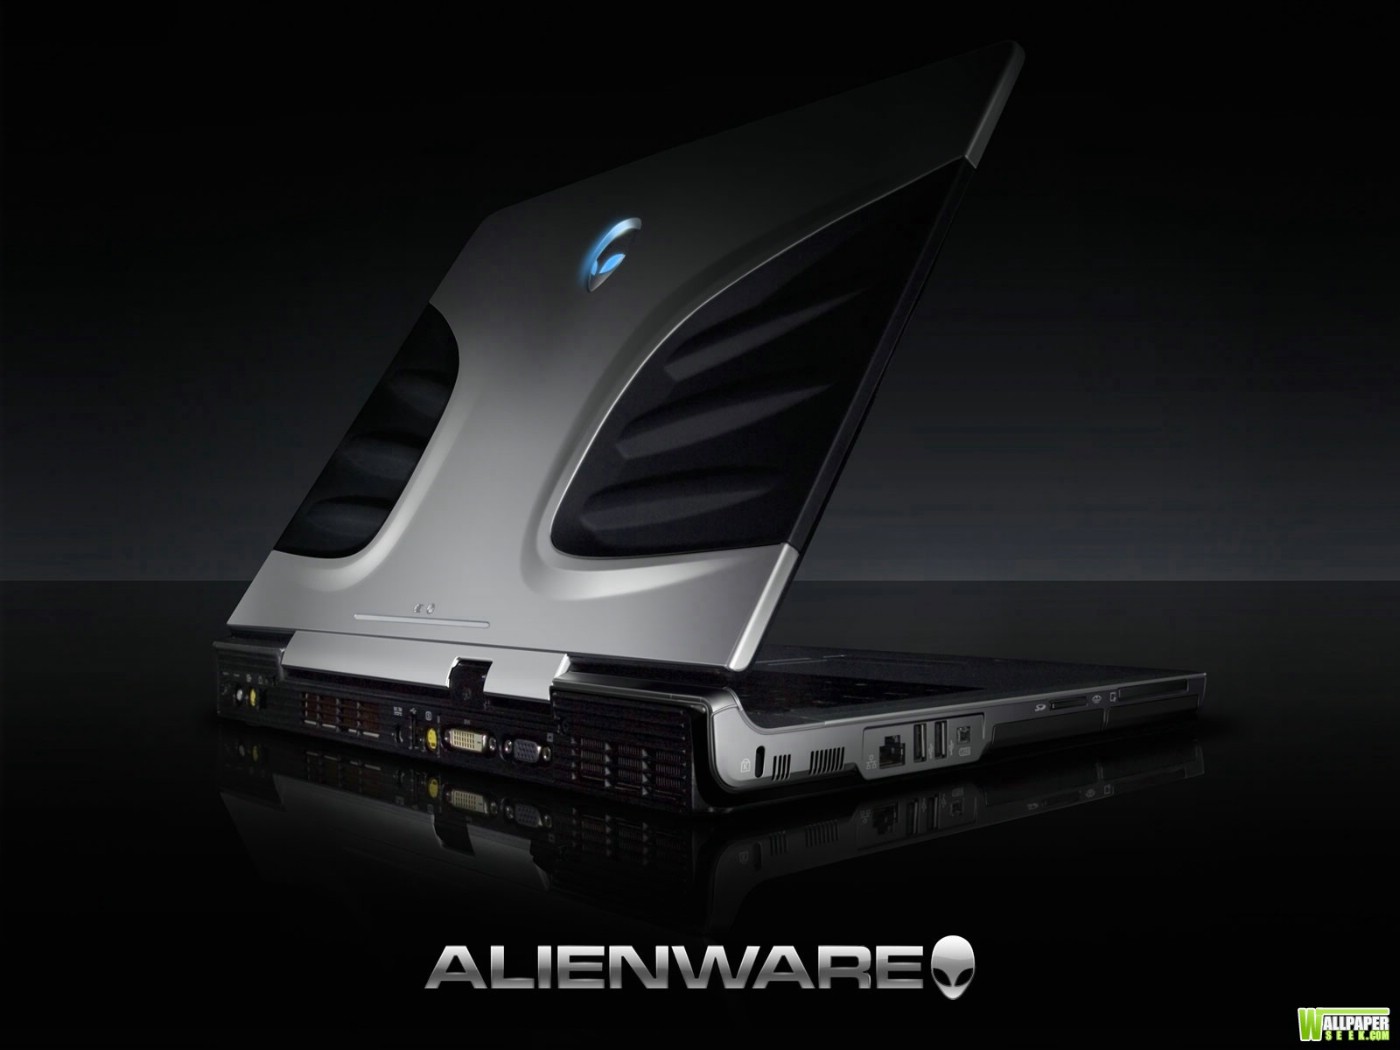 壁纸1400x1050Alienware 戴尔 壁纸27壁纸 Alienware（戴尔）壁纸 Alienware（戴尔）图片 Alienware（戴尔）素材 系统壁纸 系统图库 系统图片素材桌面壁纸